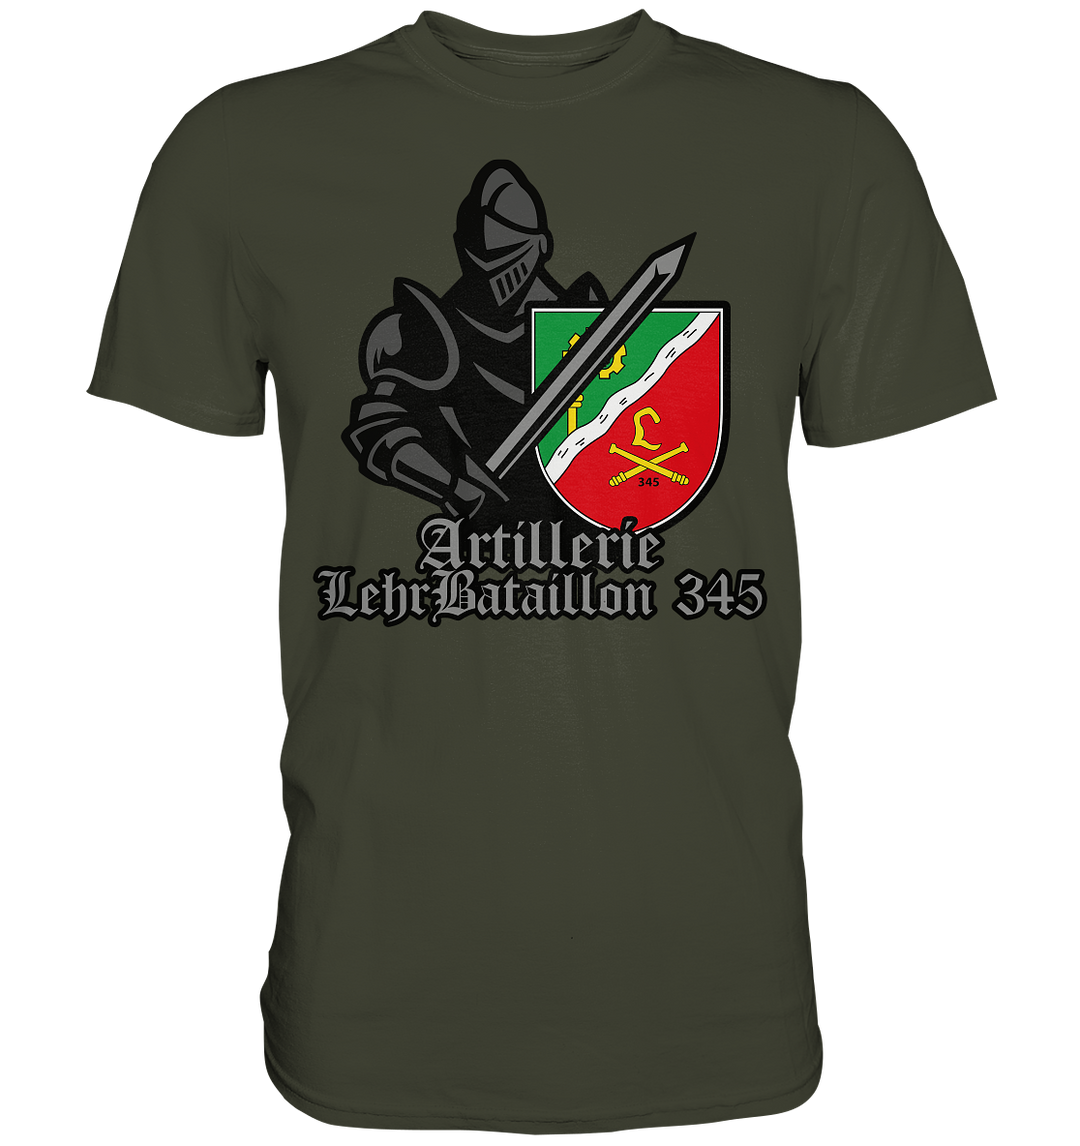 "ArtLehrBtl 345 - Ritter" - Premium Shirt